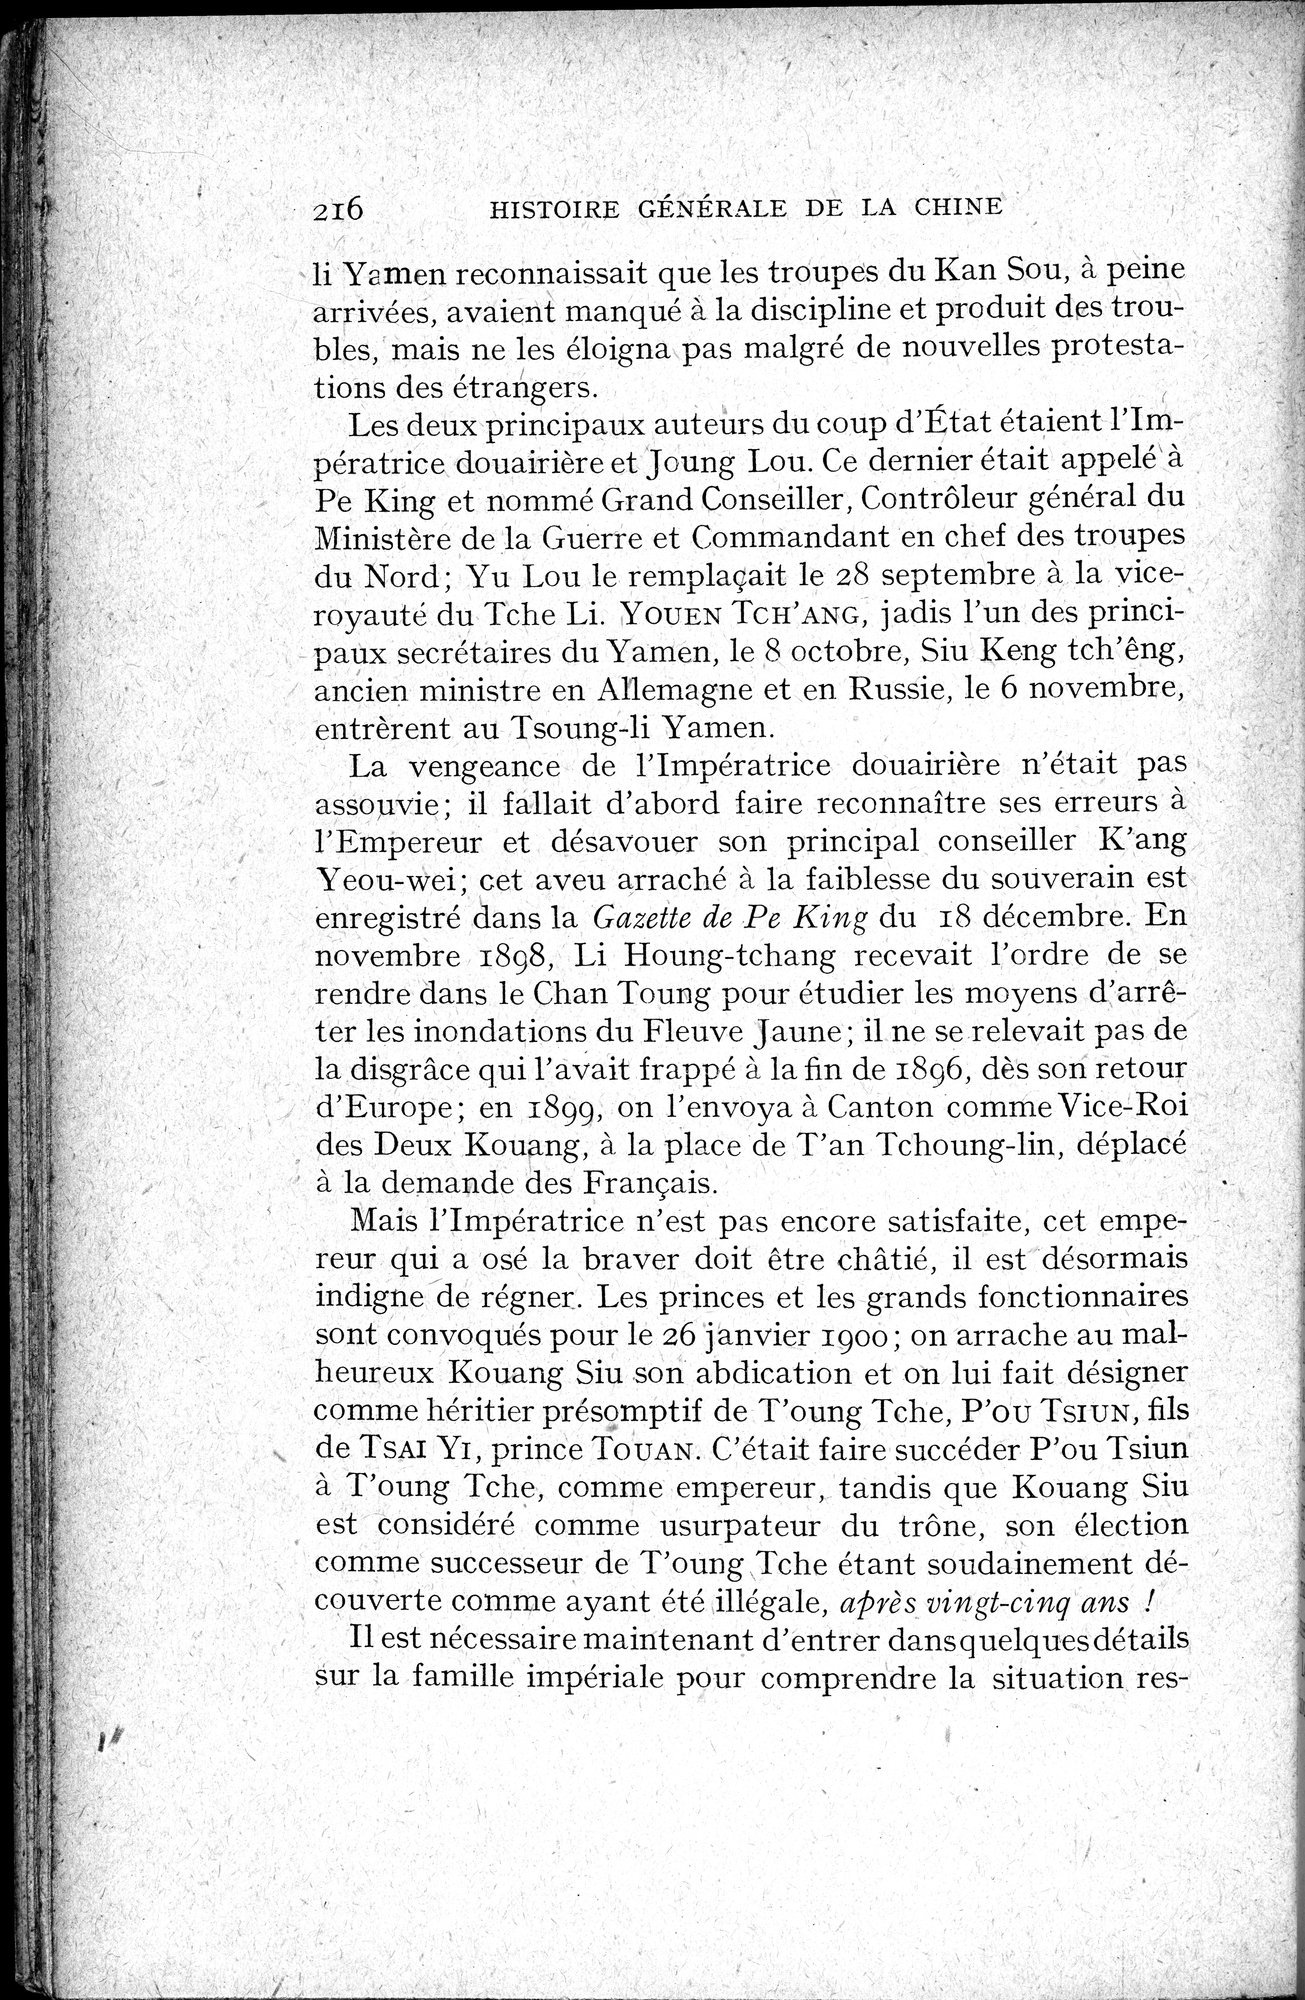 Histoire Générale de la Chine : vol.4 / Page 218 (Grayscale High Resolution Image)